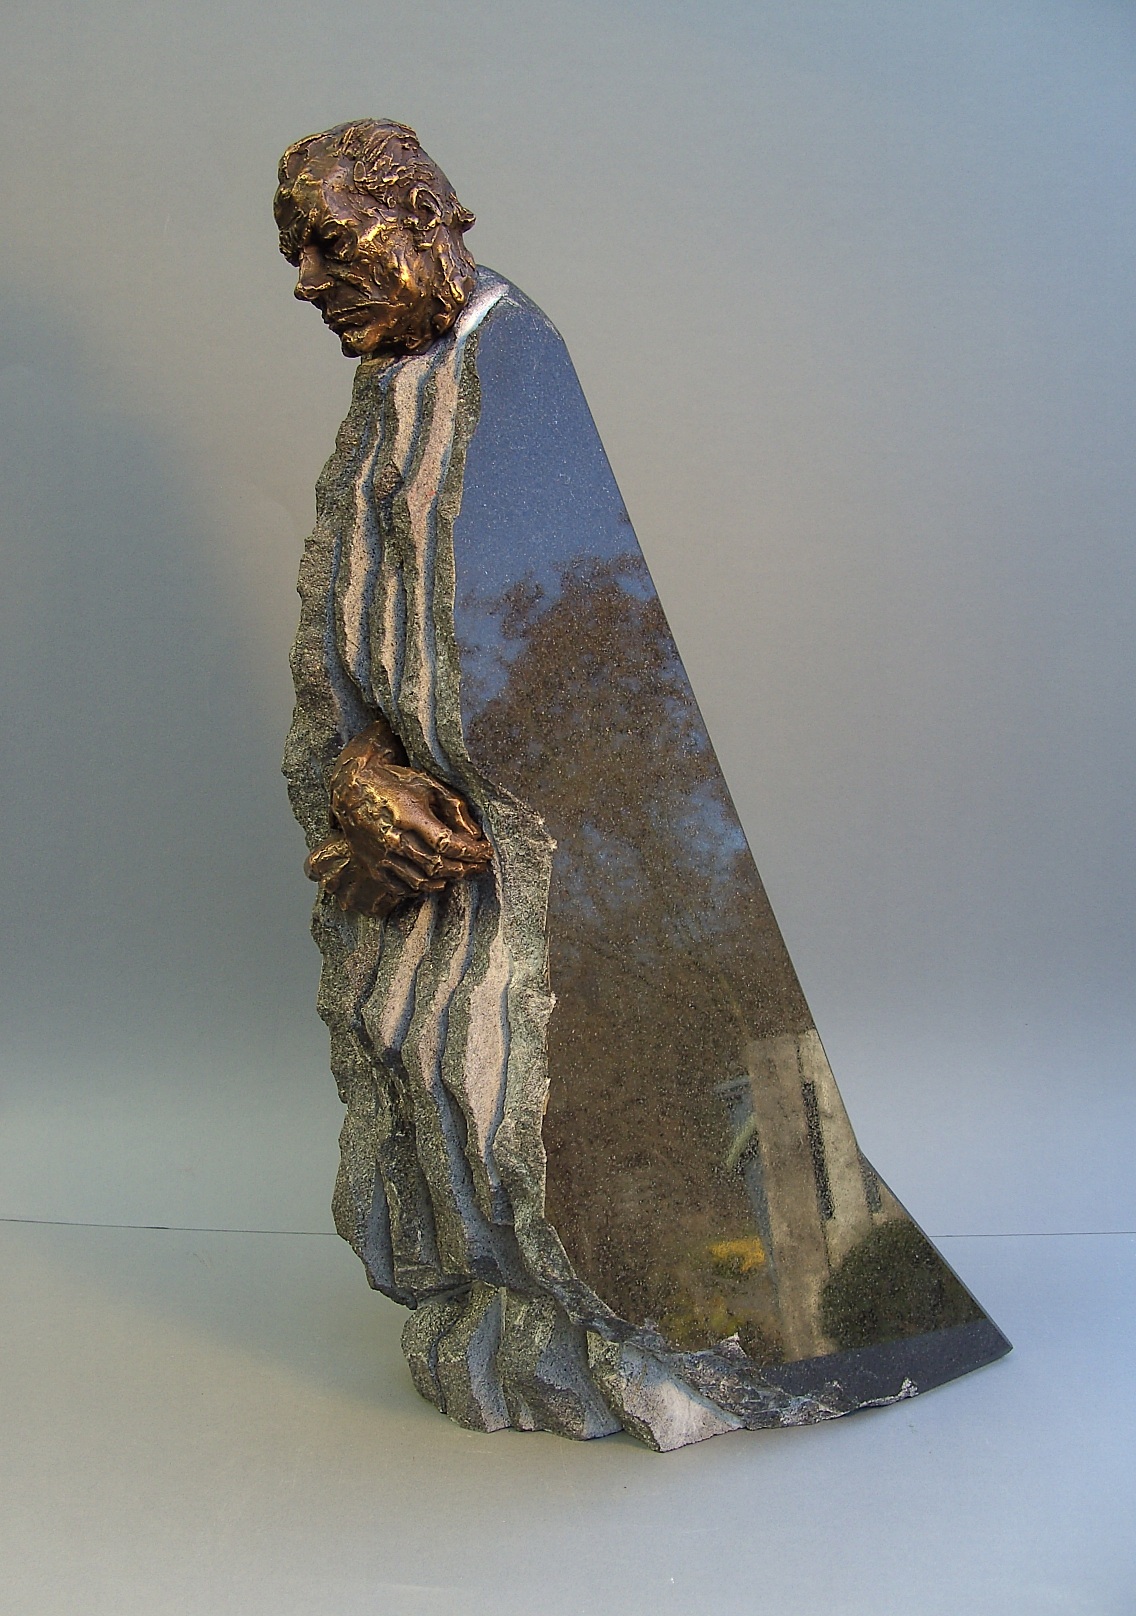 Willy Brandt, Warsaw 1970,
        51 x 17 x 29,
        bronze, granite, 2010